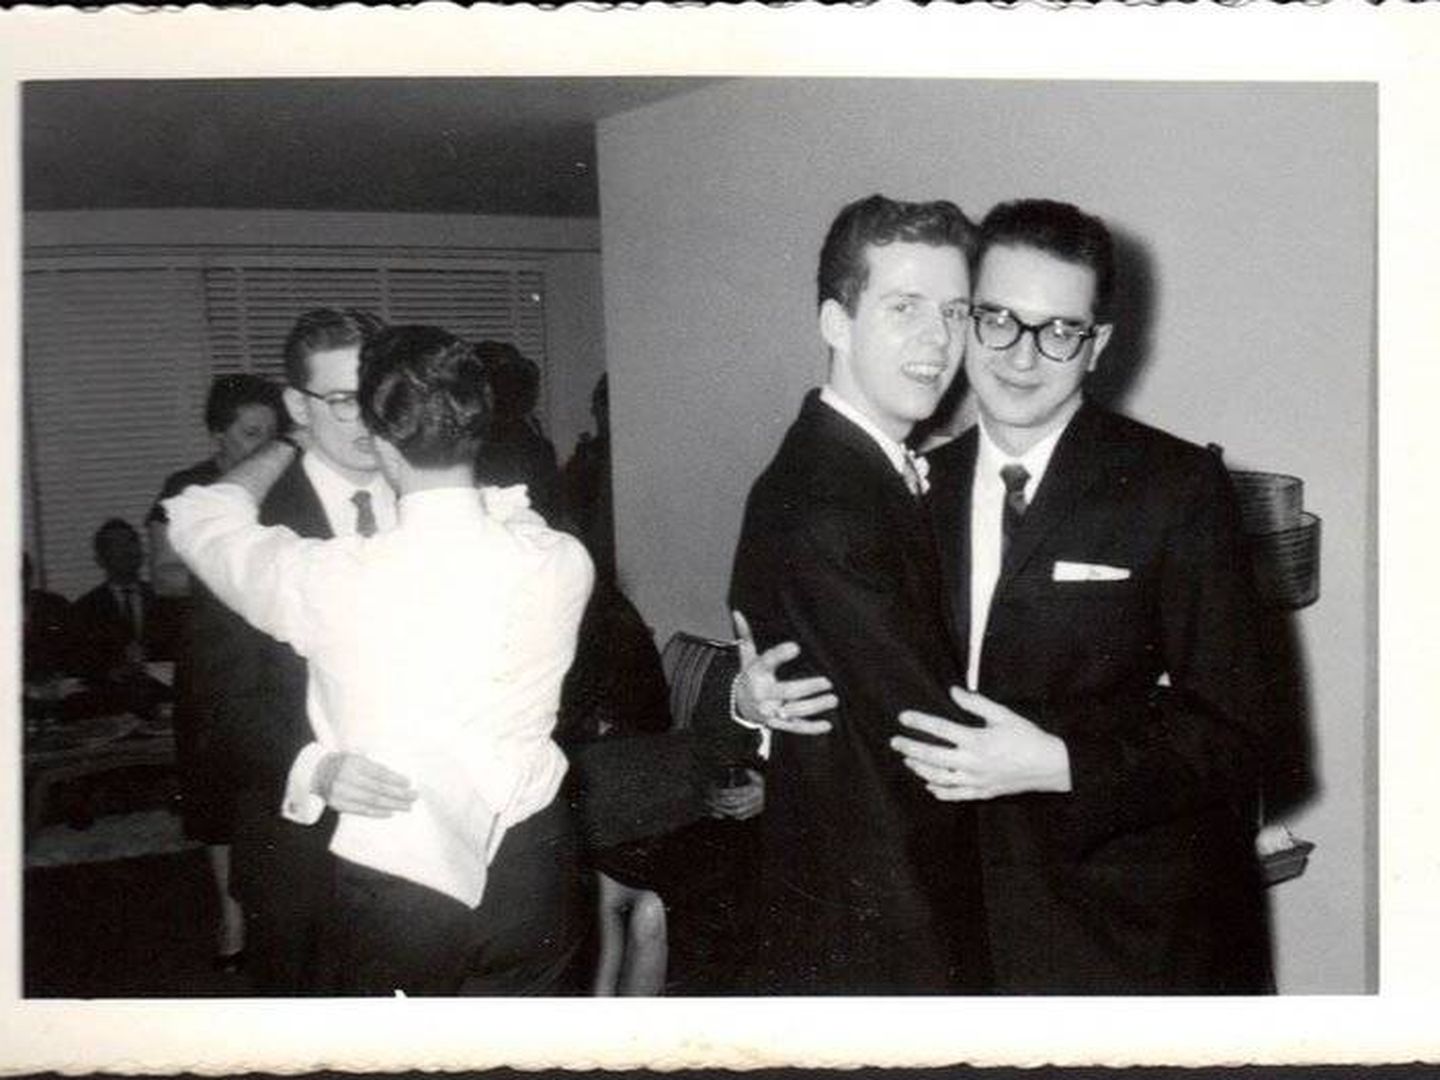 Foto de la boda. (ONE Archives at the USC Libraries)